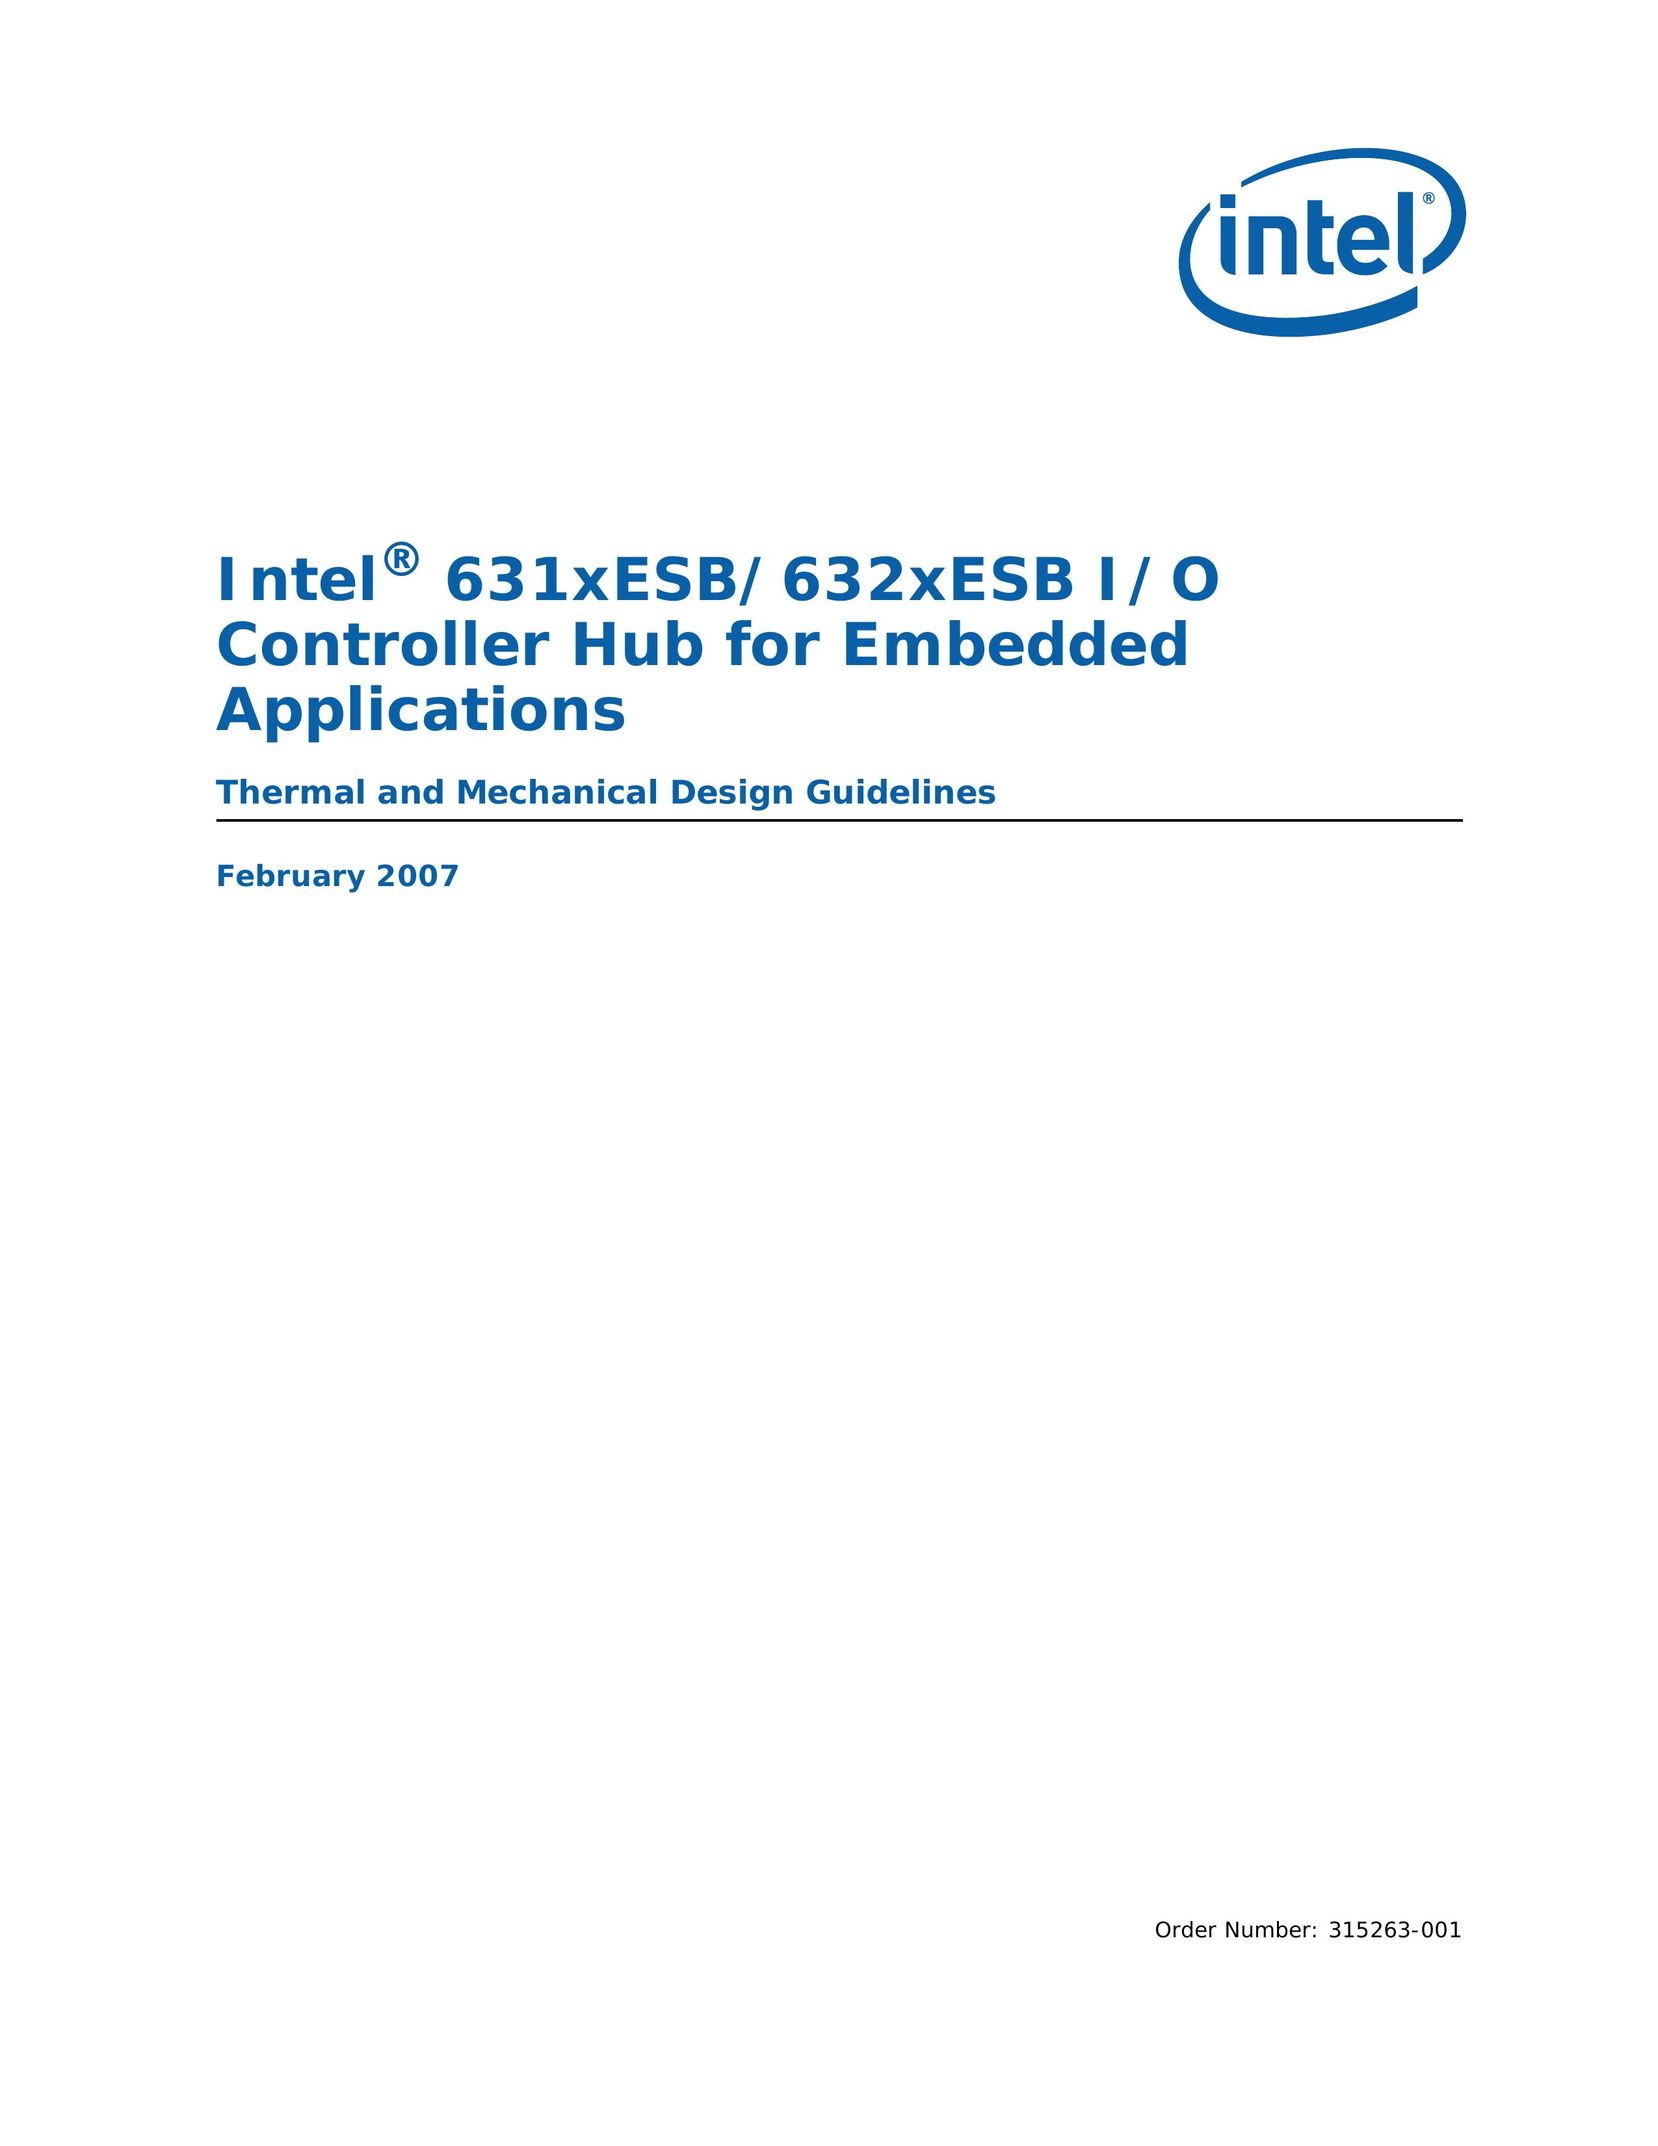 Intel 631xESB Computer Hardware User Manual